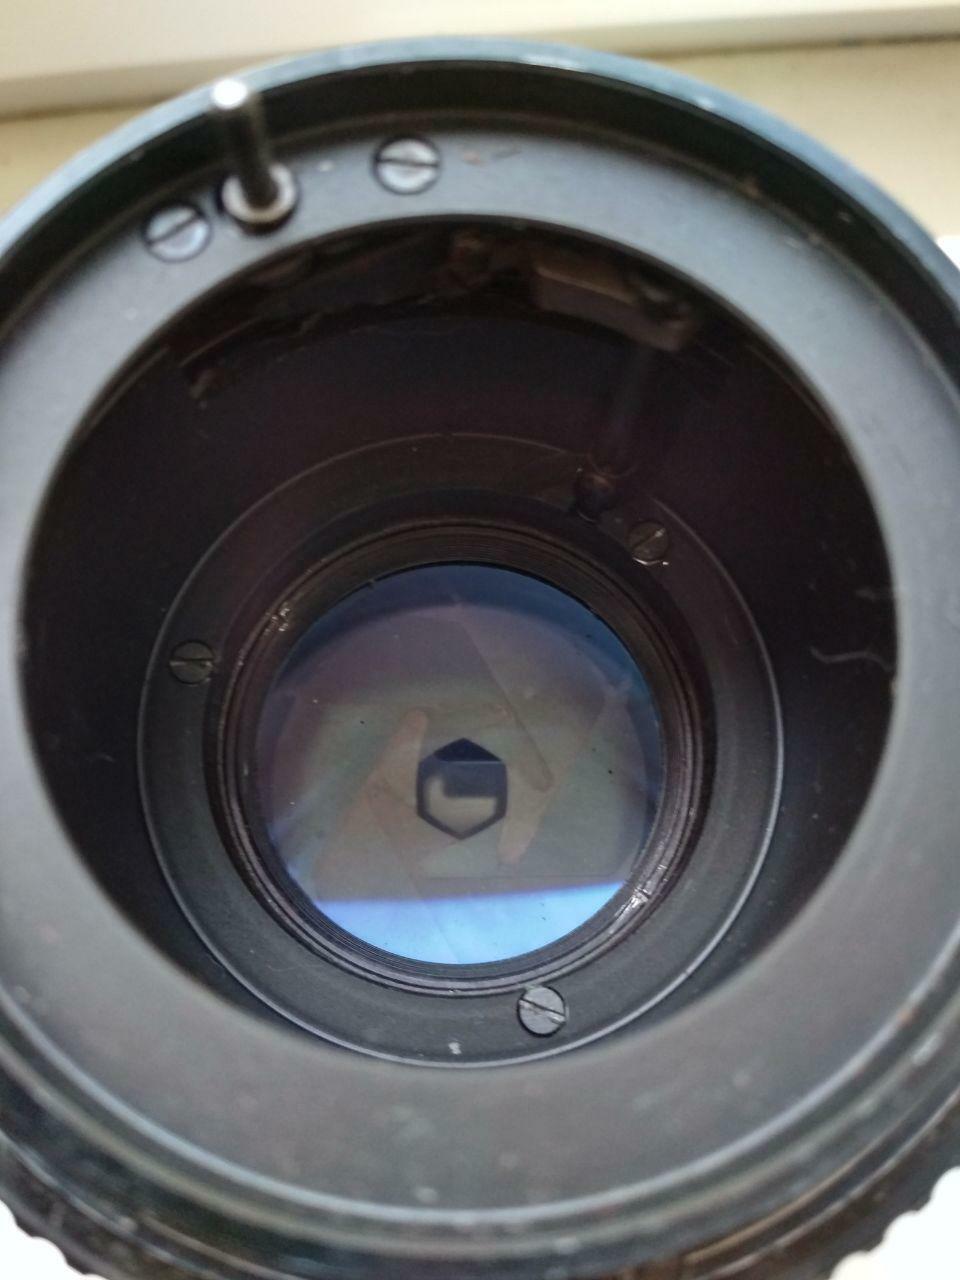 JUPITER-36B 250mm f/3.5 P6 Pentacon Six Kiev-88 Salut-C Medium Format Lens